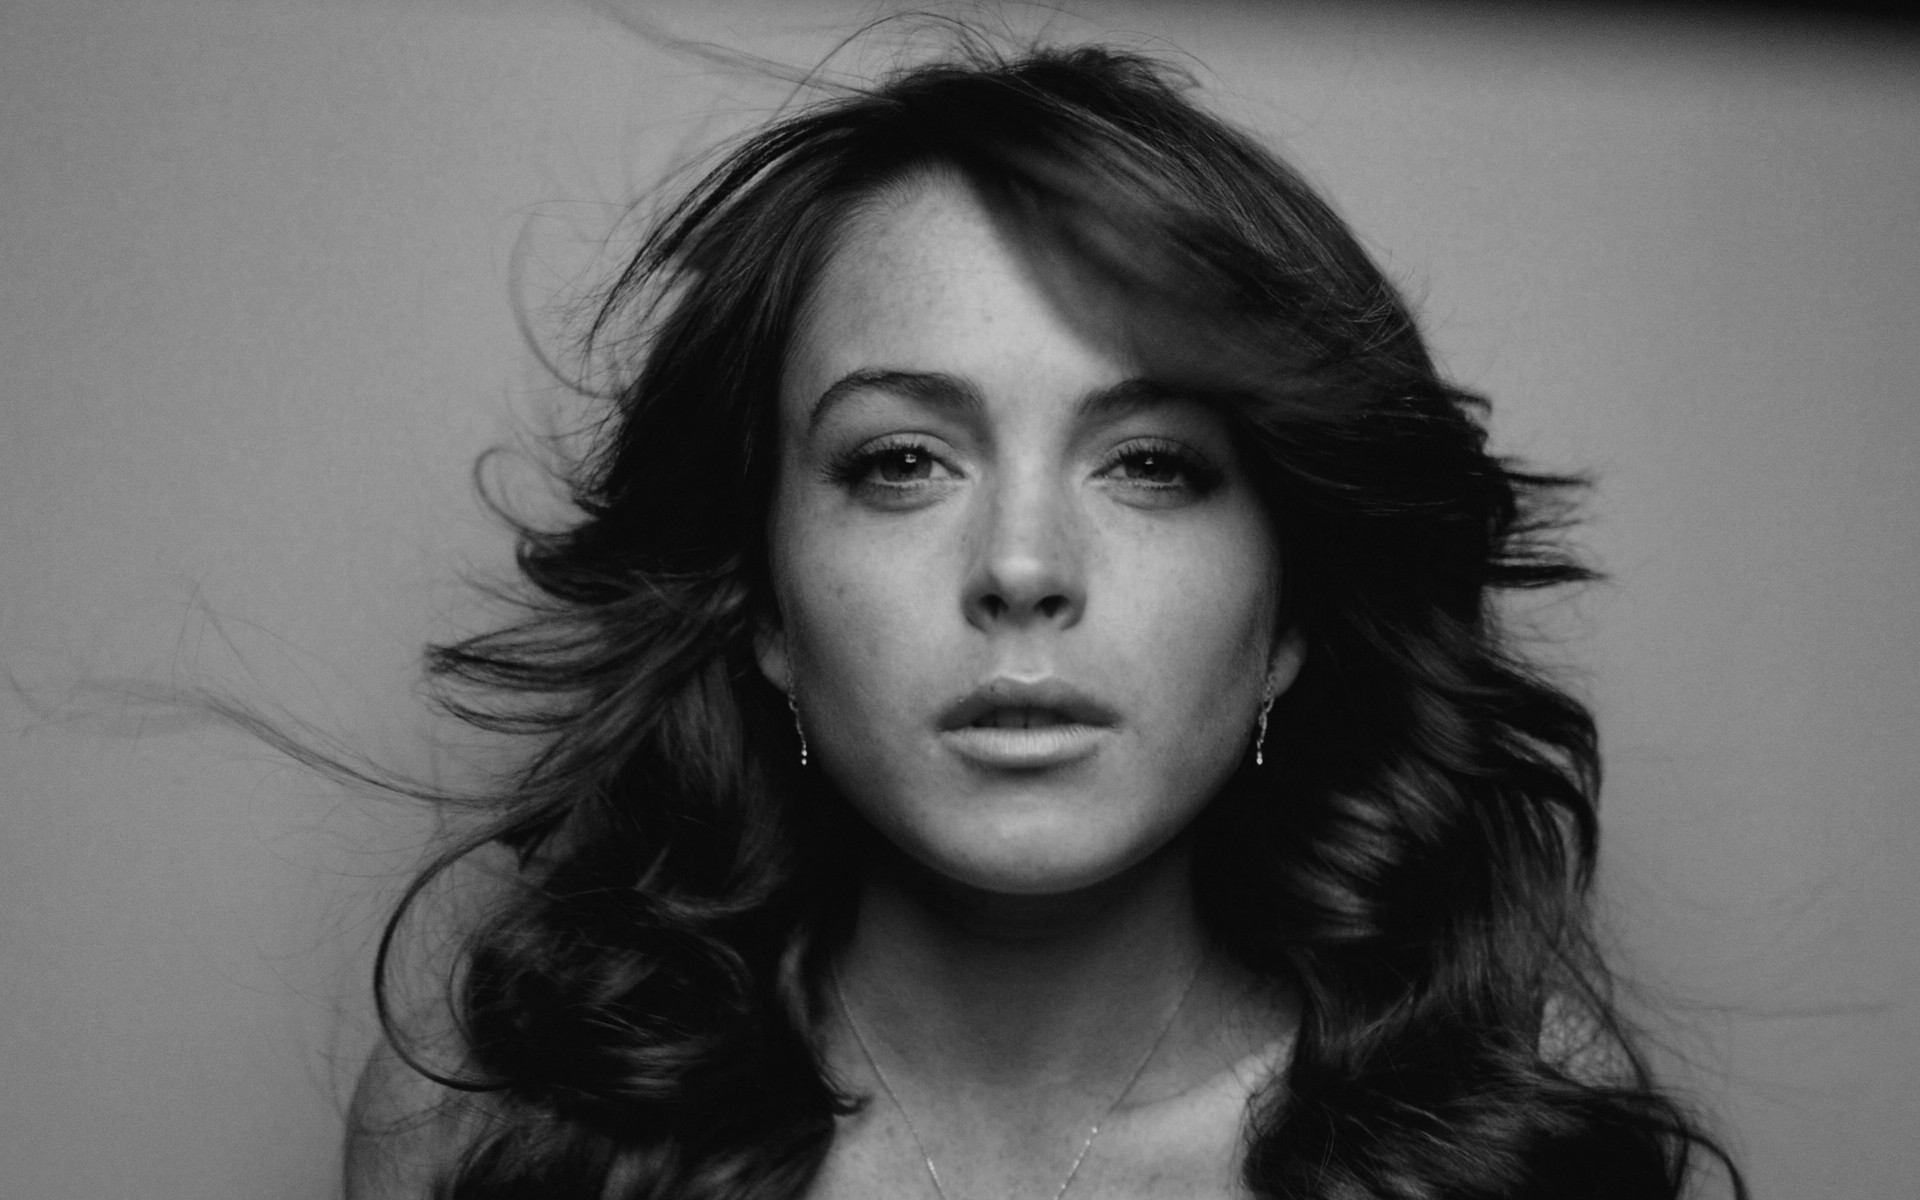 women, Lindsay Lohan, monochrome - desktop wallpaper